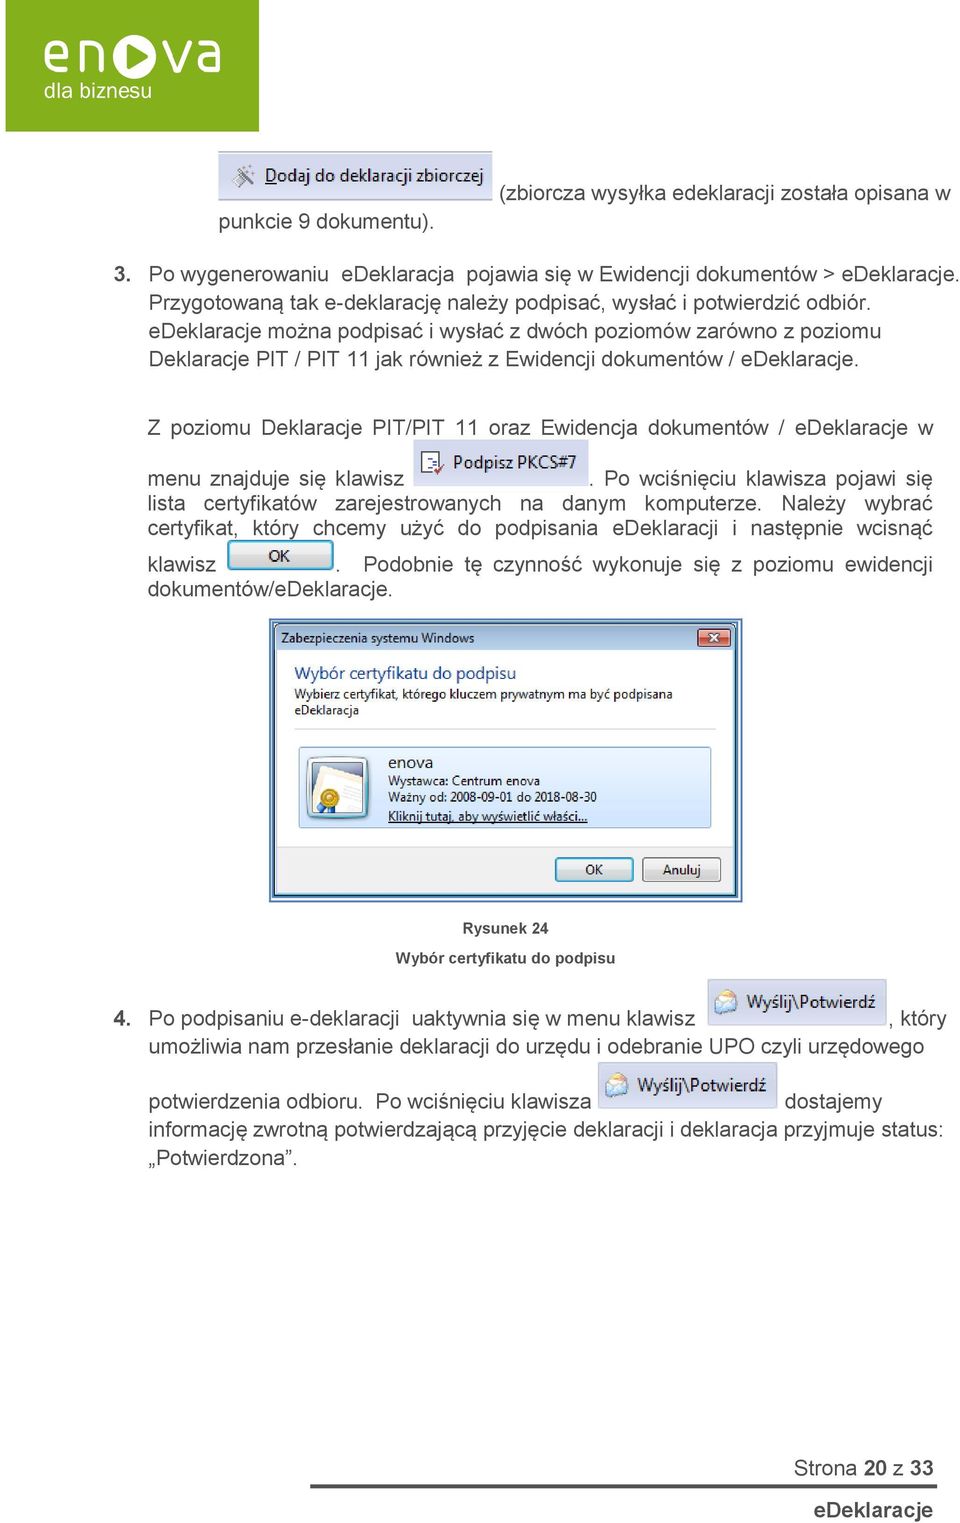 Z poziomu Deklaracje PIT/PIT 11 oraz Ewidencja dokumentów / w menu znajduje się klawisz. Po wciśnięciu klawisza pojawi się lista certyfikatów zarejestrowanych na danym komputerze.